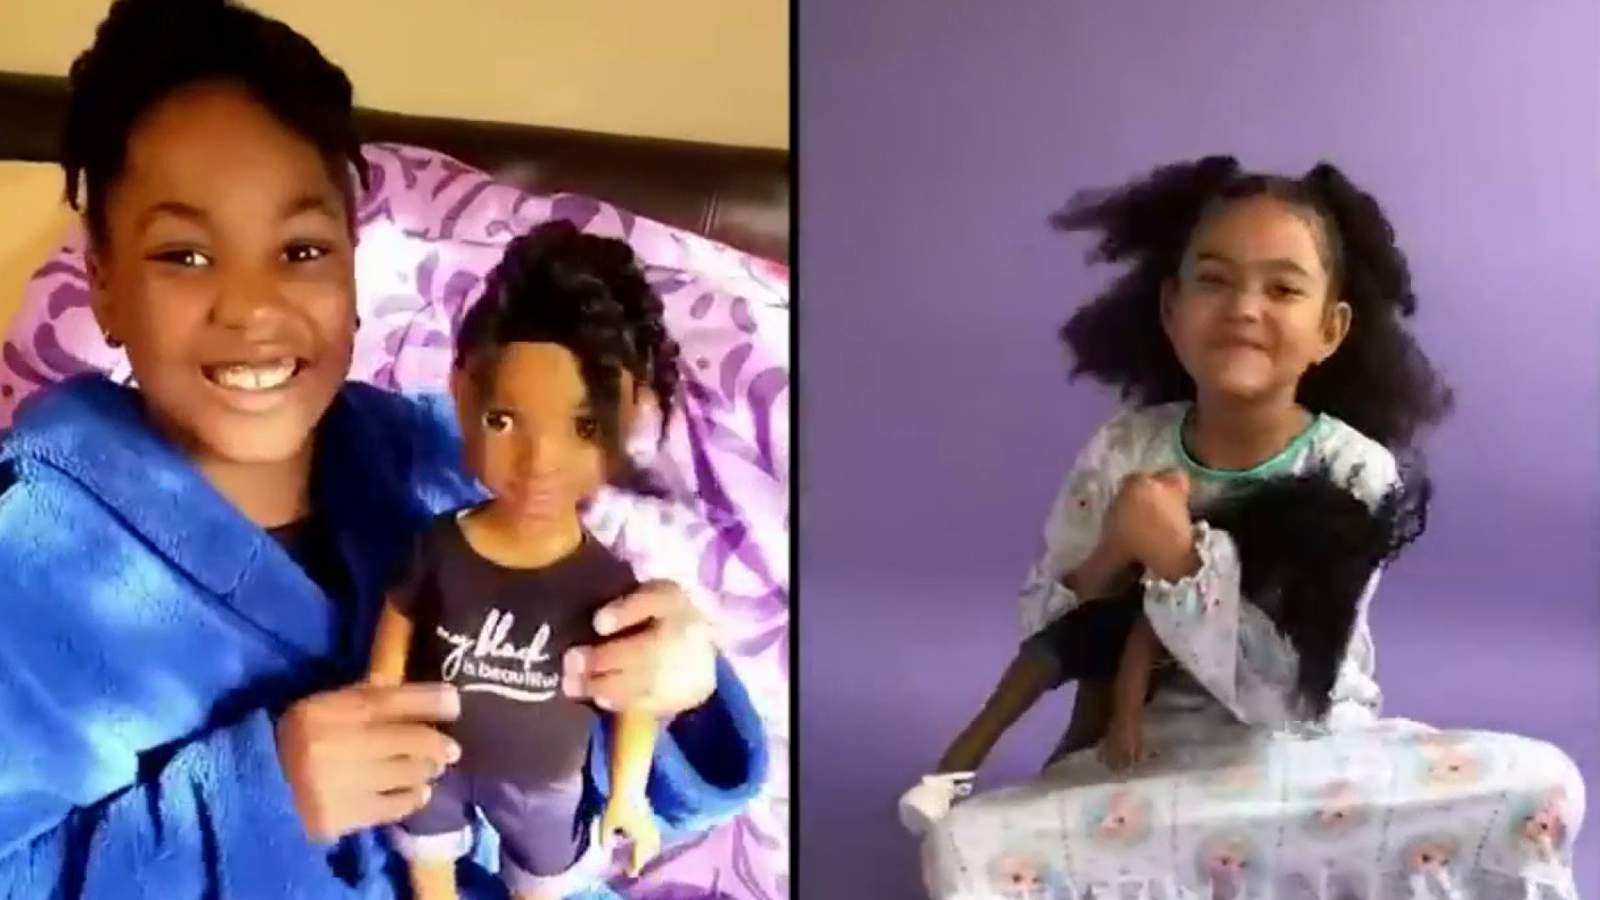 Detroit entrepreneur creates diverse line of dolls